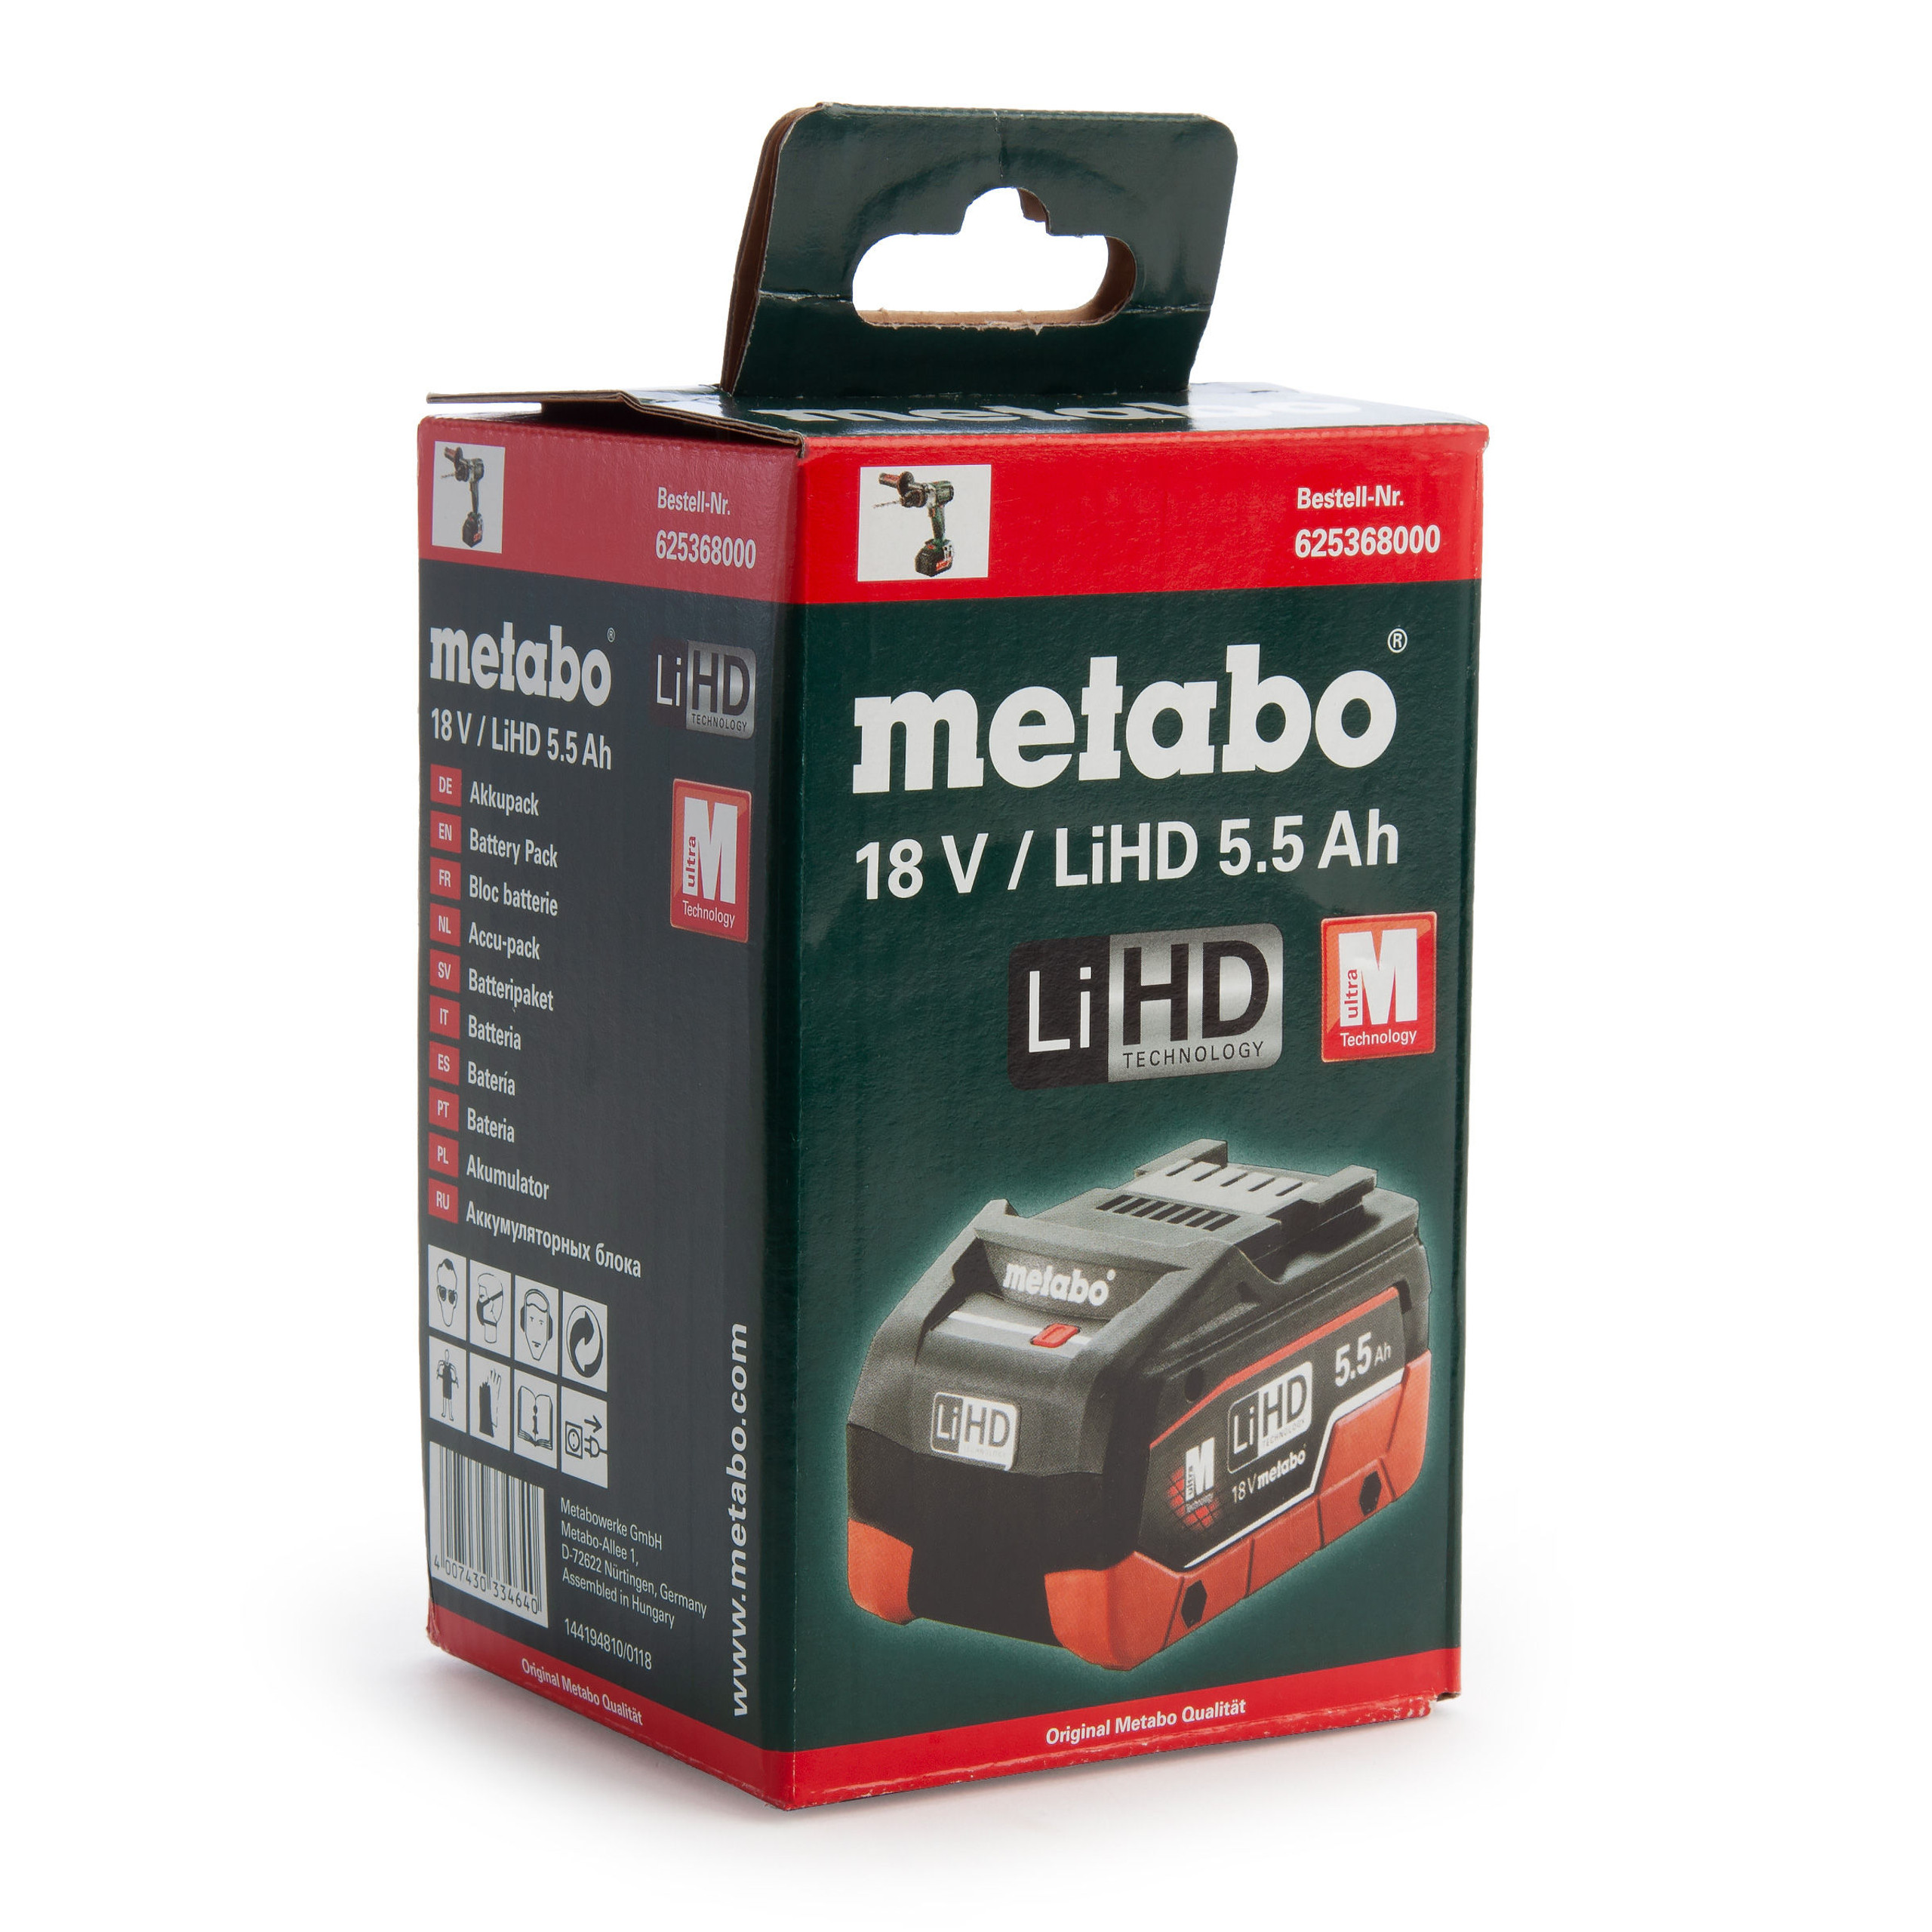 metabo-625368000-18v-lihd-battery-pack-5-5ah-toolstop